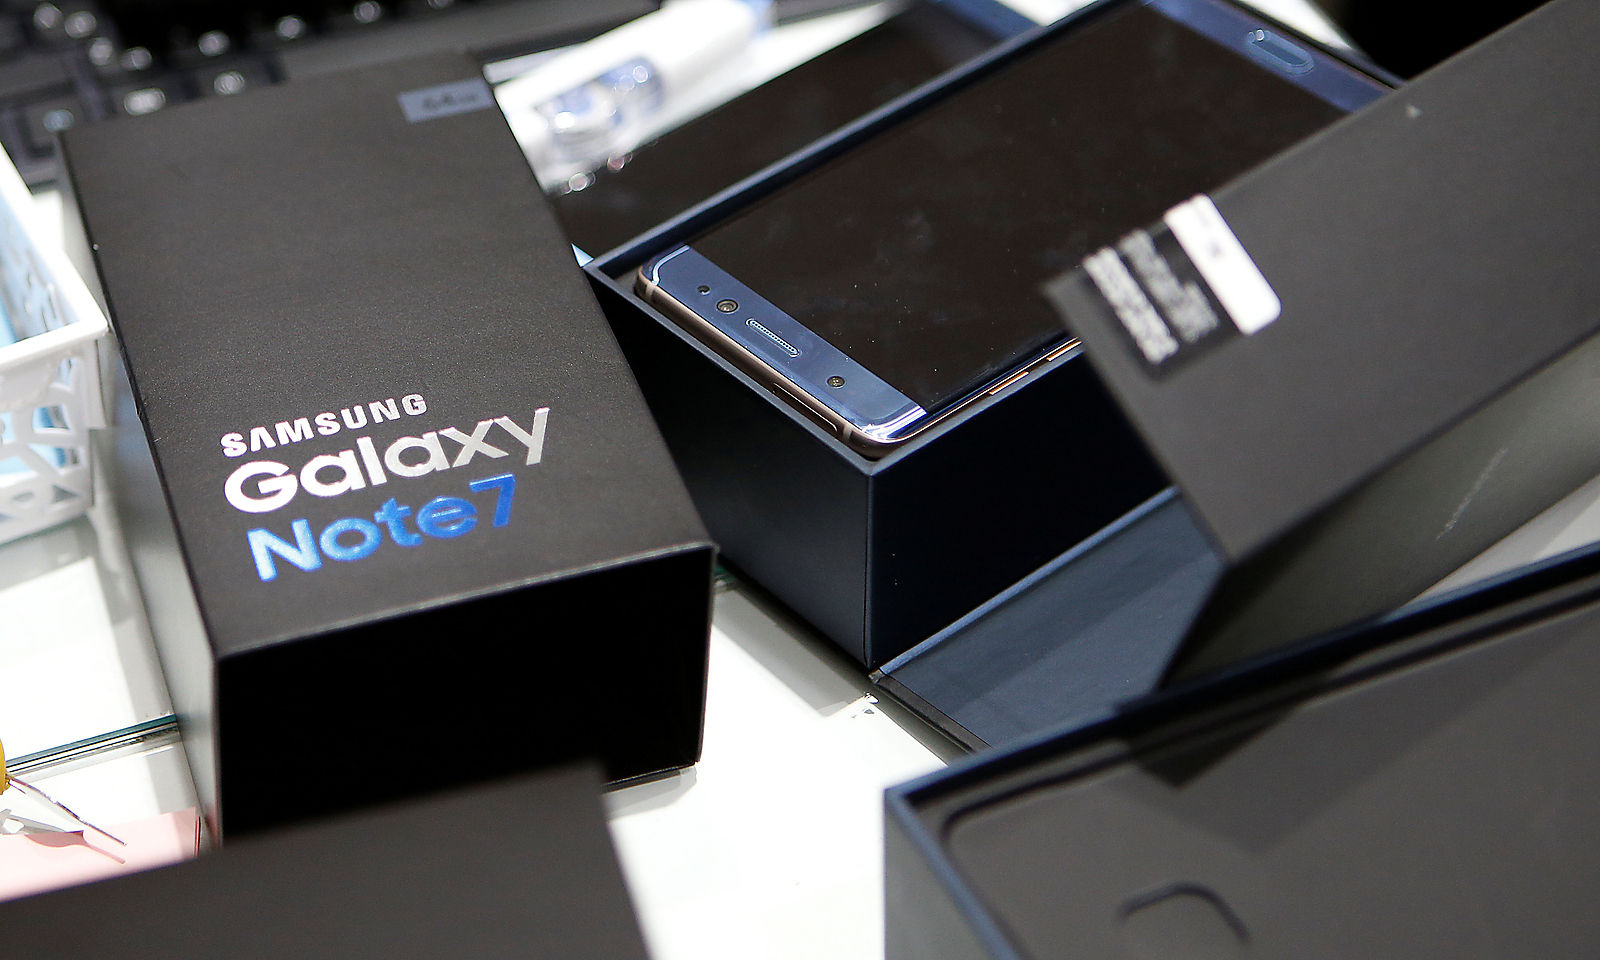 Samsung อินเดีย ออกโรงชี้ข่าวลือเตรียมเอา Galaxy Note 7 กลับมาขายใหม่ไม่เป็นความจริง